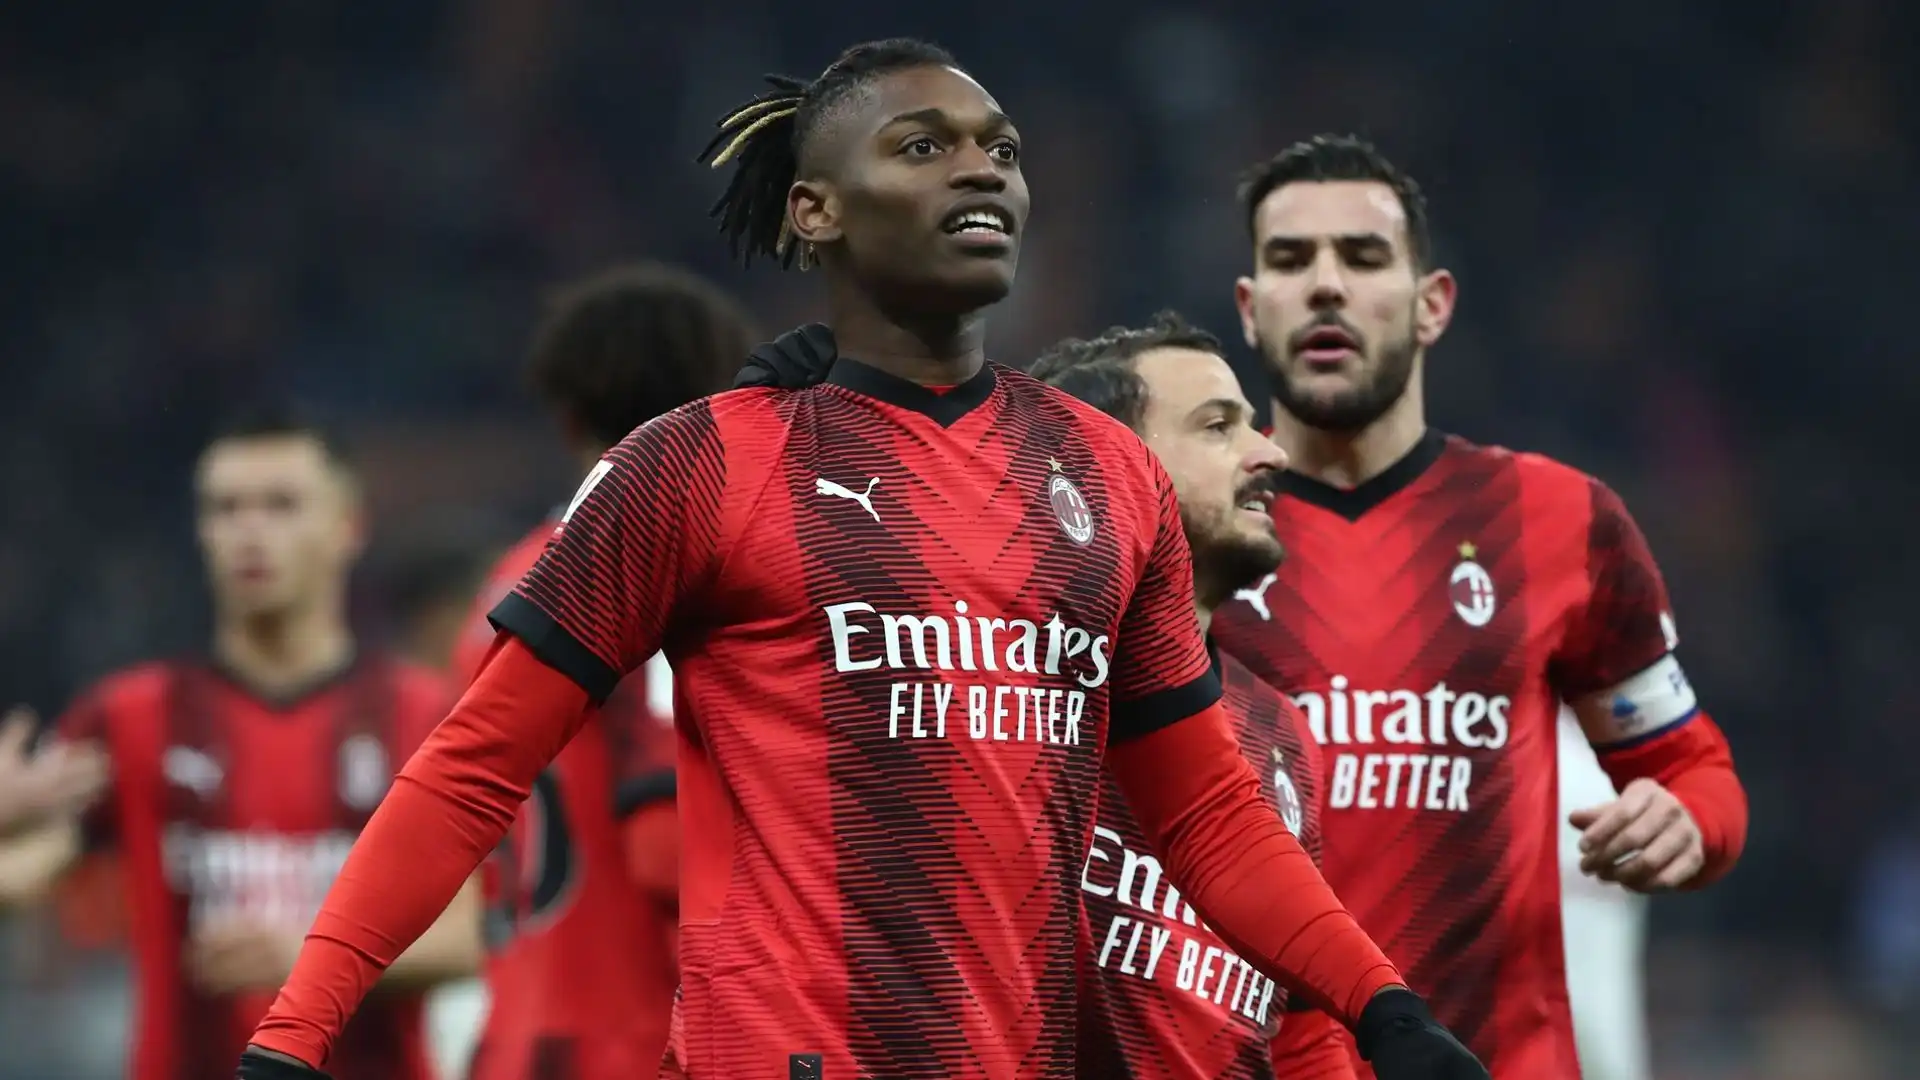 Il Milan l'ha acquistato nel 2019 per circa 50 milioni di euro